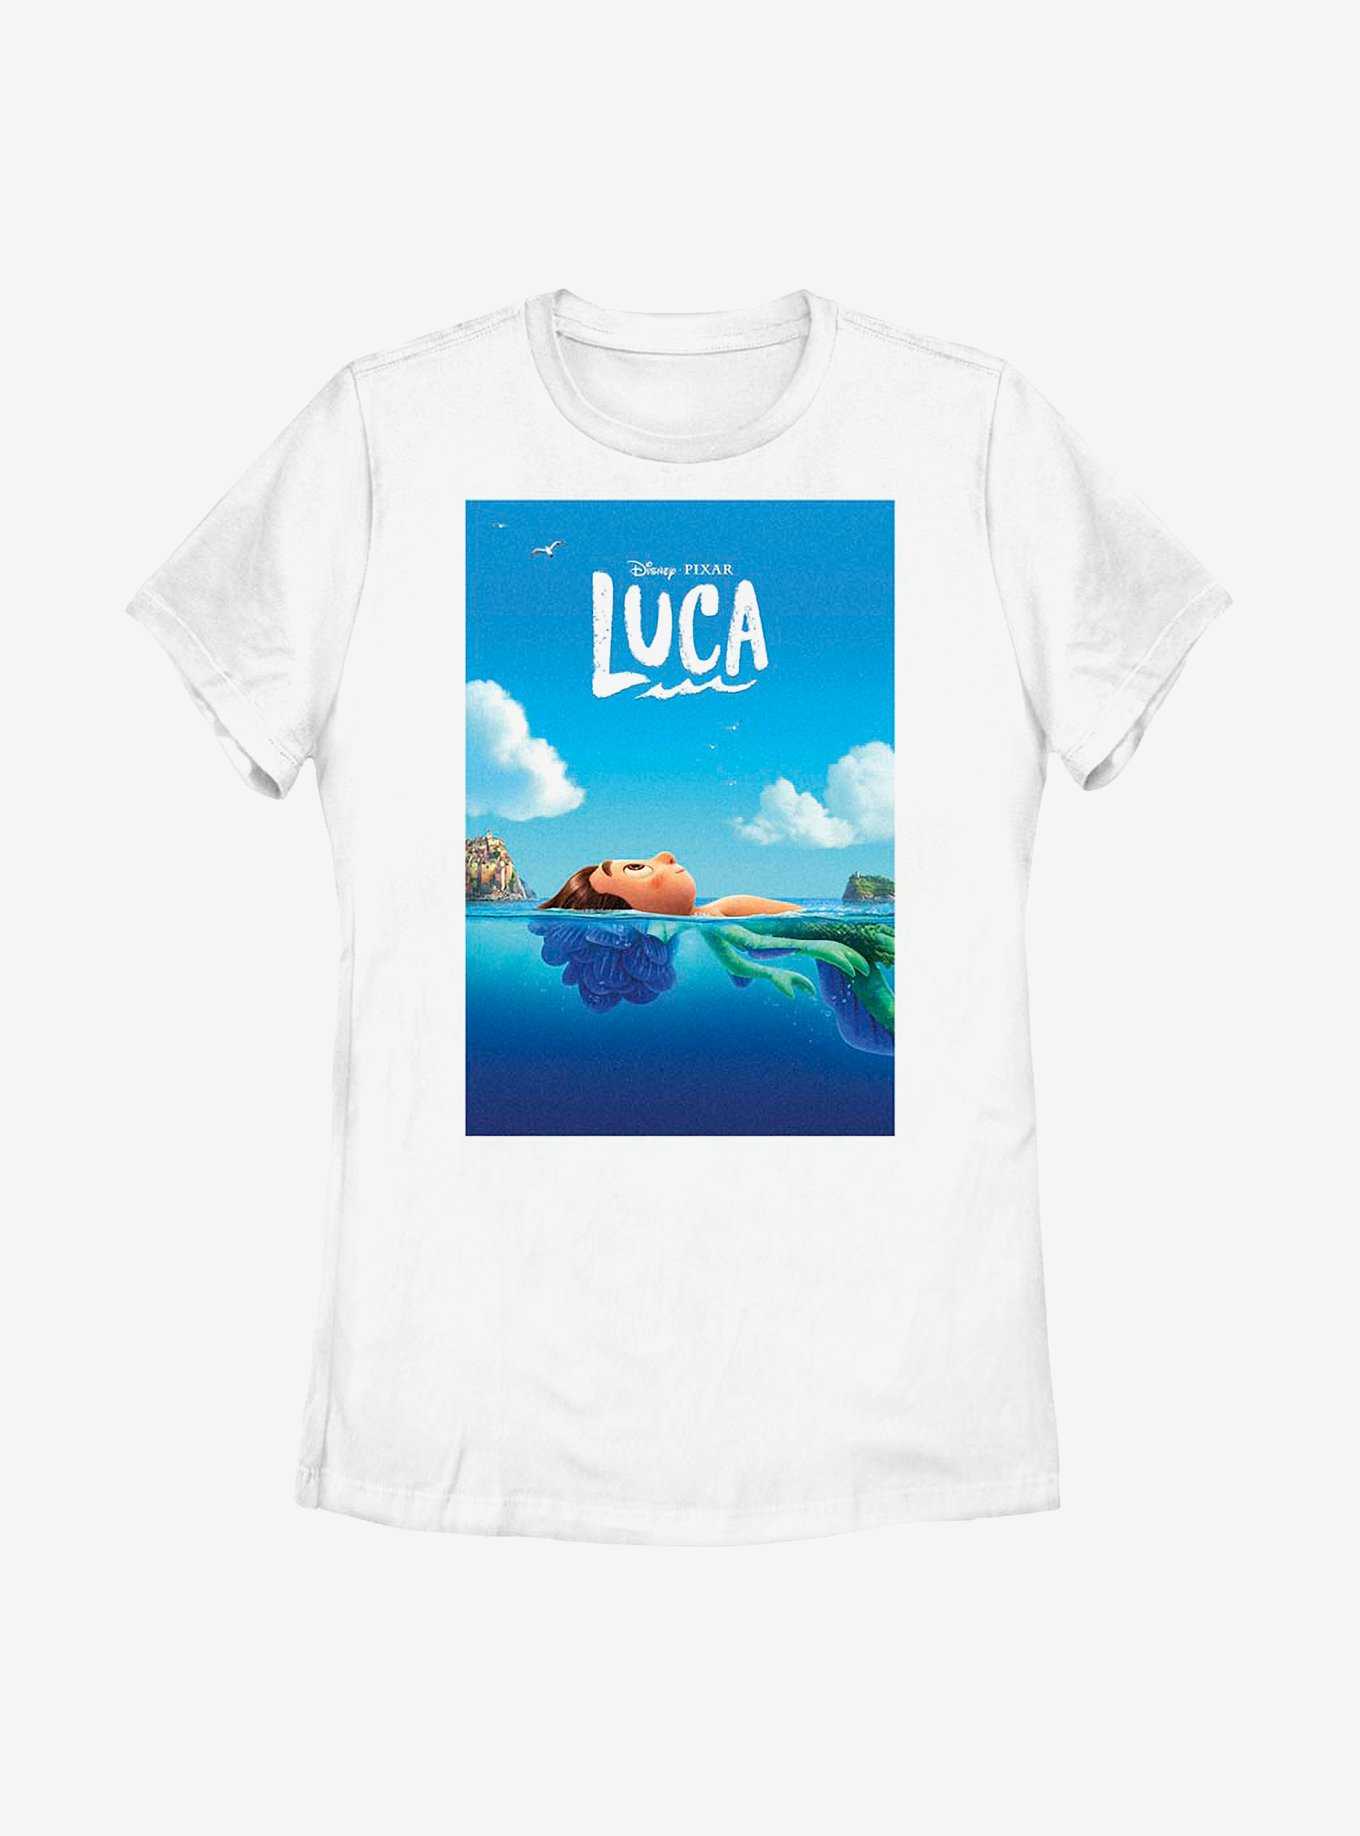 Disney Pixar Luca Poster Womens T-Shirt, , hi-res